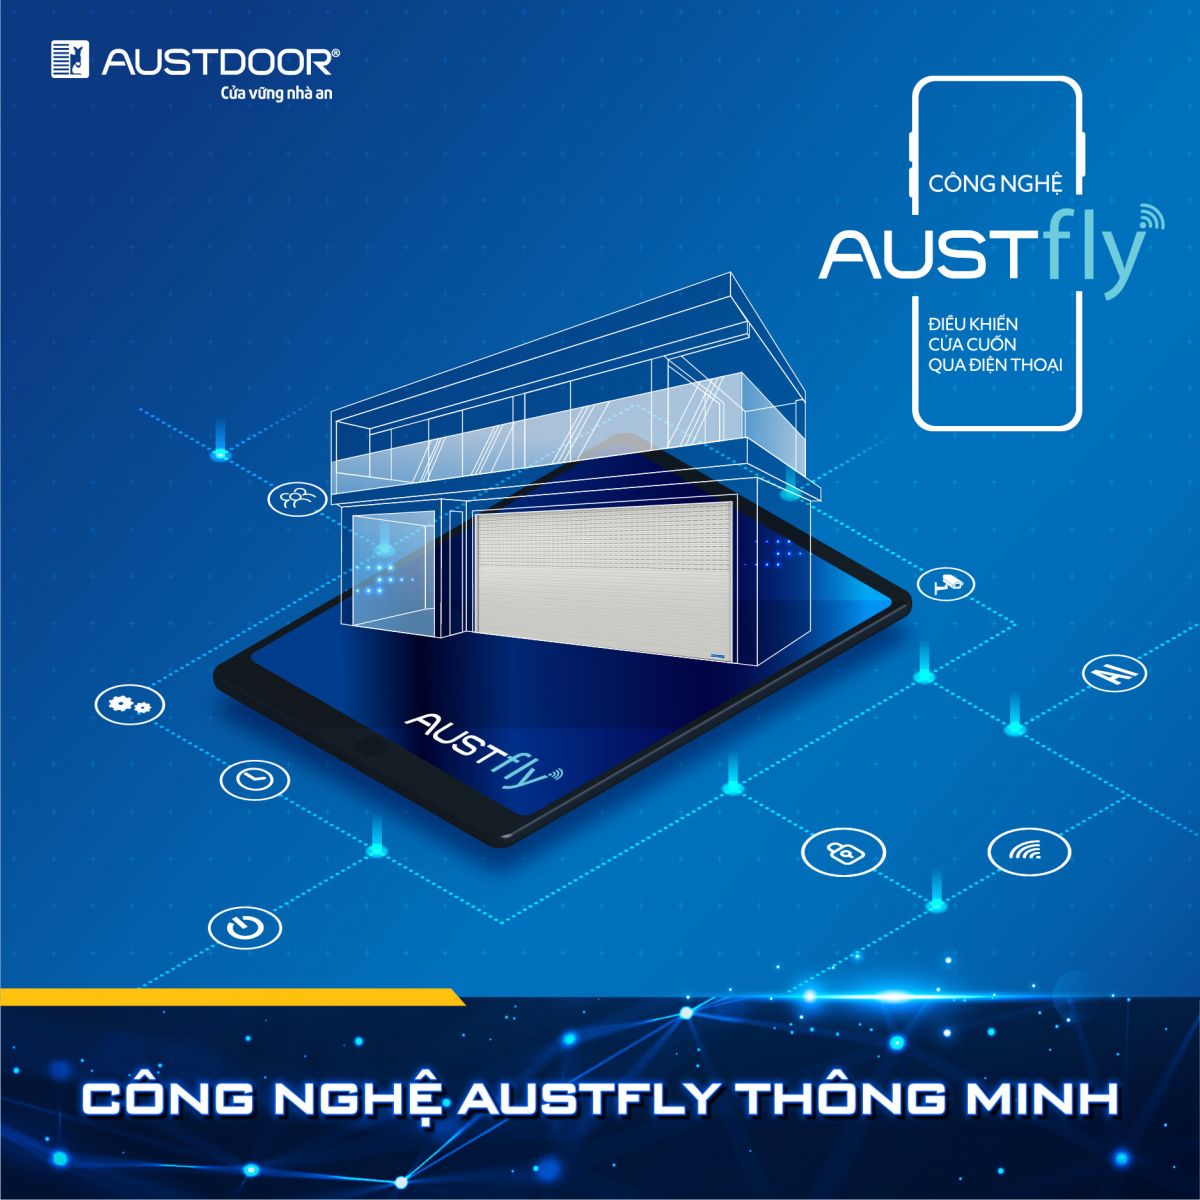 công nghệ Austfly thông minh mở cửa cuốn bằng smartphone